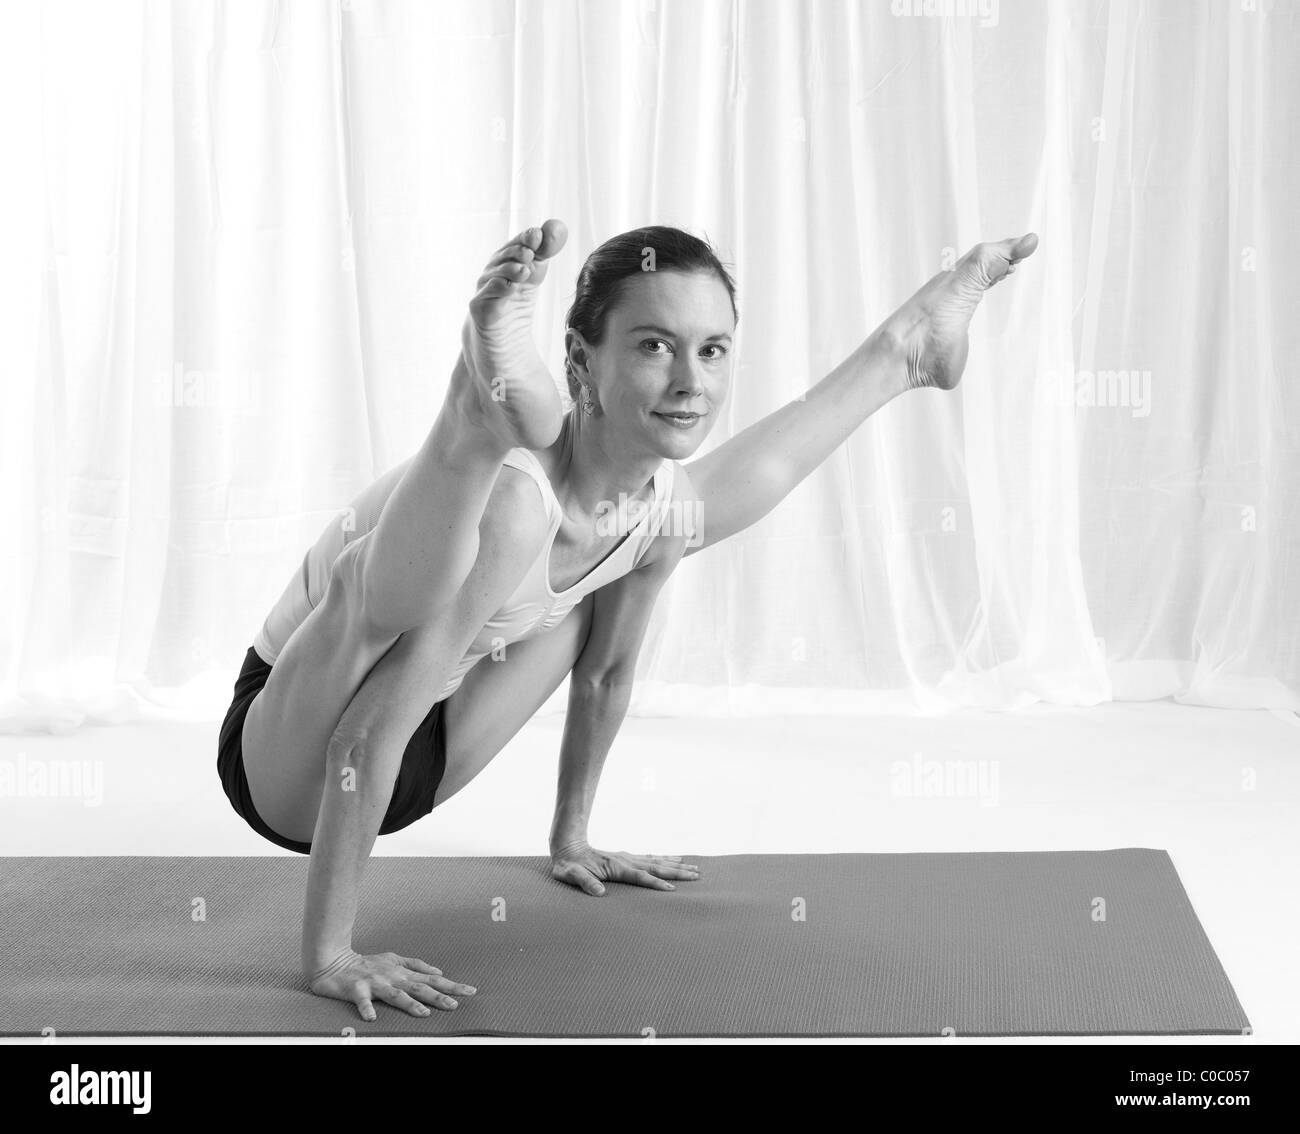 yoga poses,balances,relaxation,backbends,salamba, forward bends Stock Photo